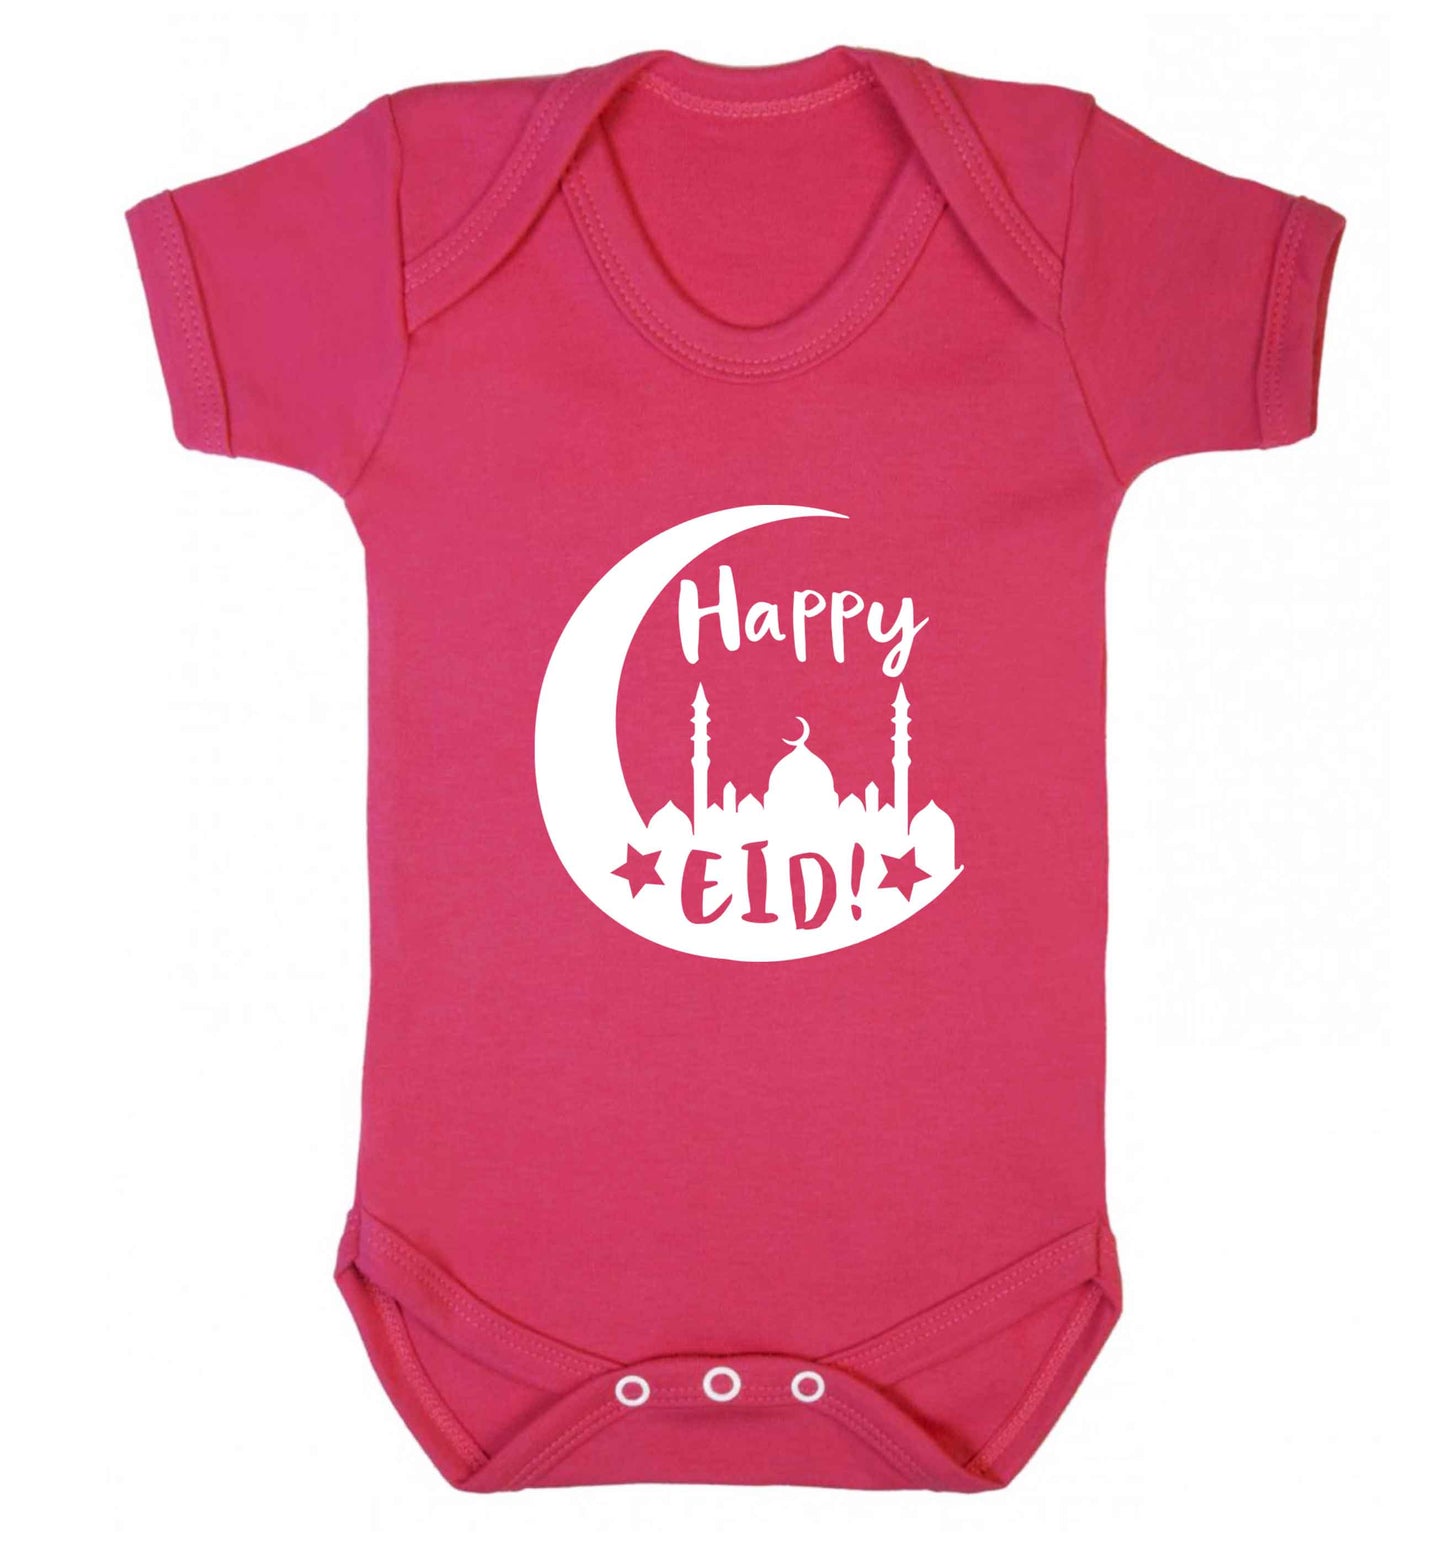 Happy Eid baby vest dark pink 18-24 months